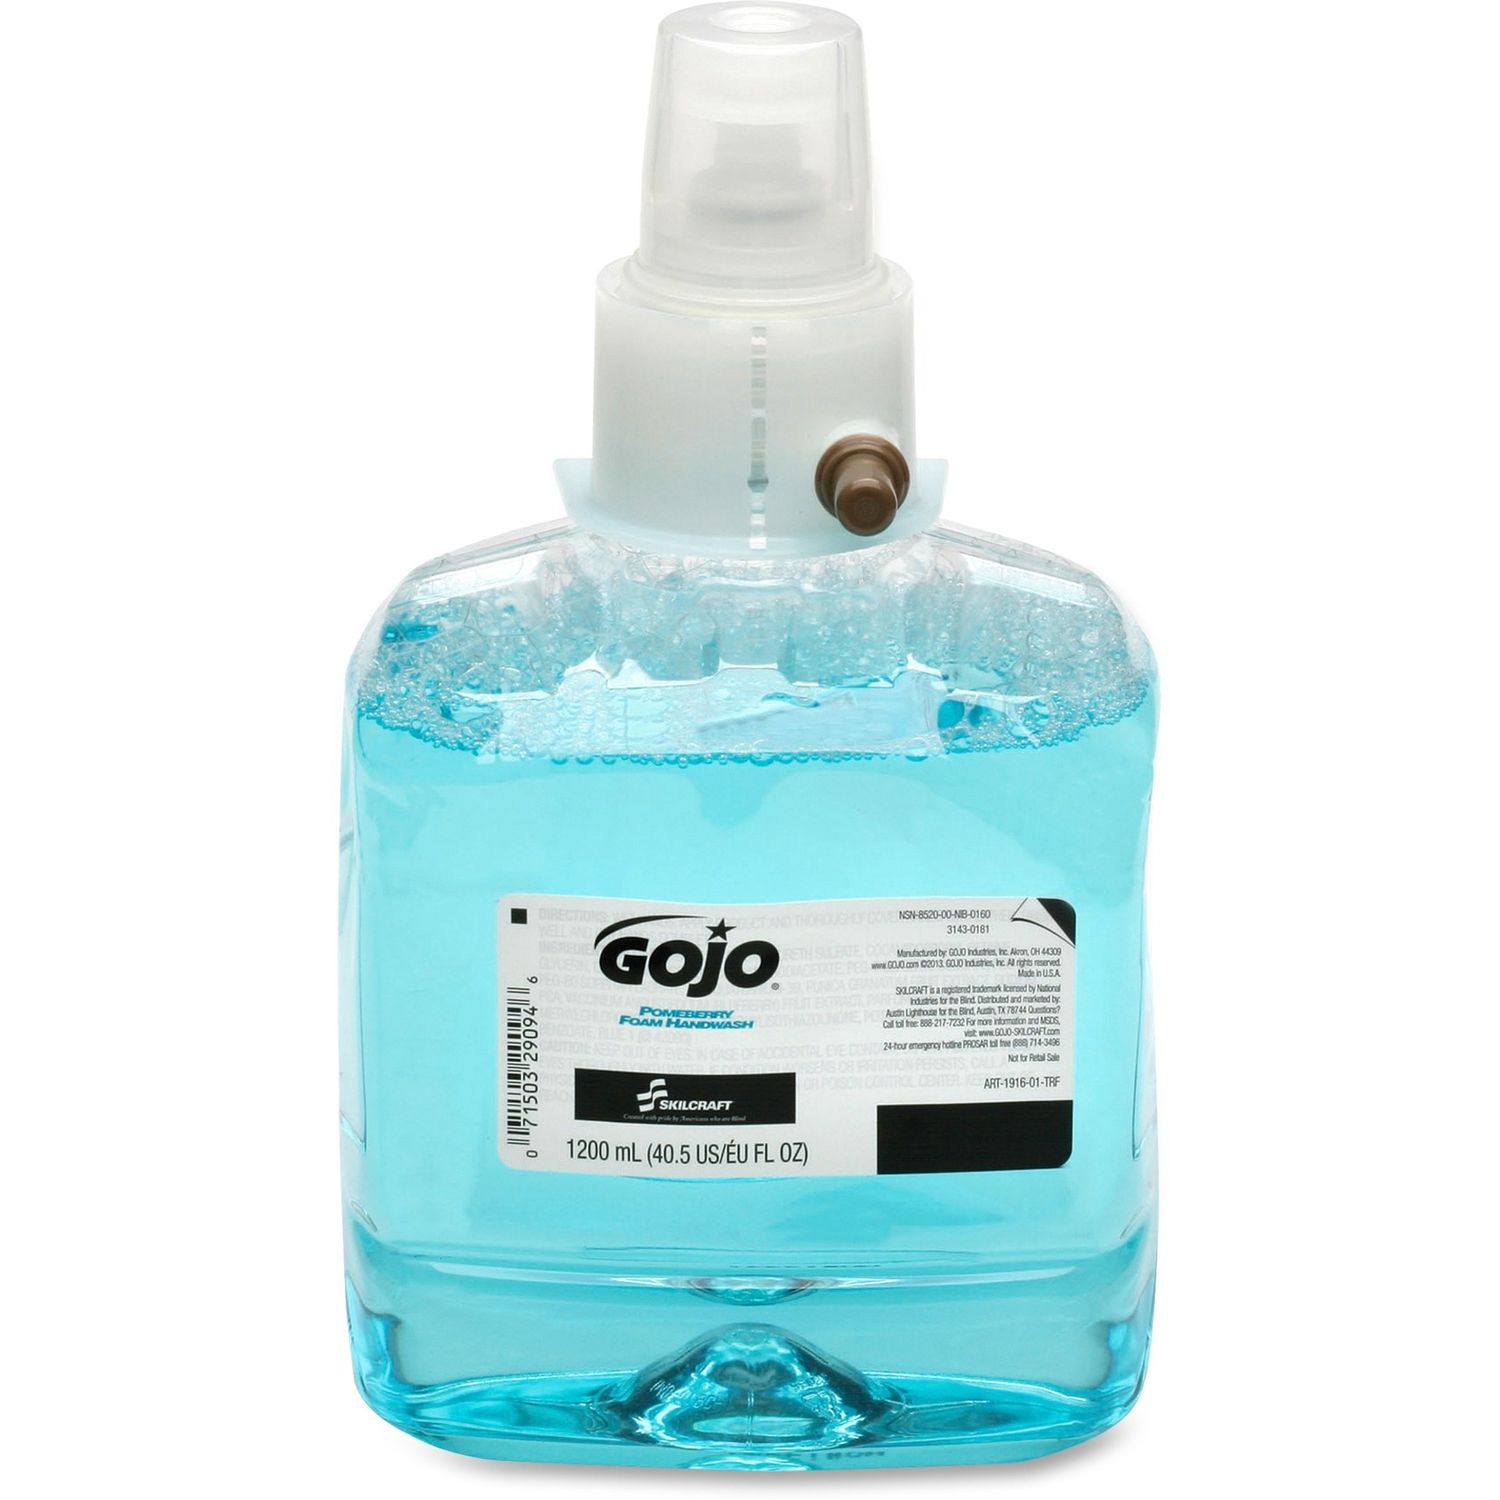 GOJO LTX-12 Refill Pomegranate Handwash Pomegranate Scent, 40.6 fl oz (1200 mL), Hand, Blue, Bio-based, 2 / Box